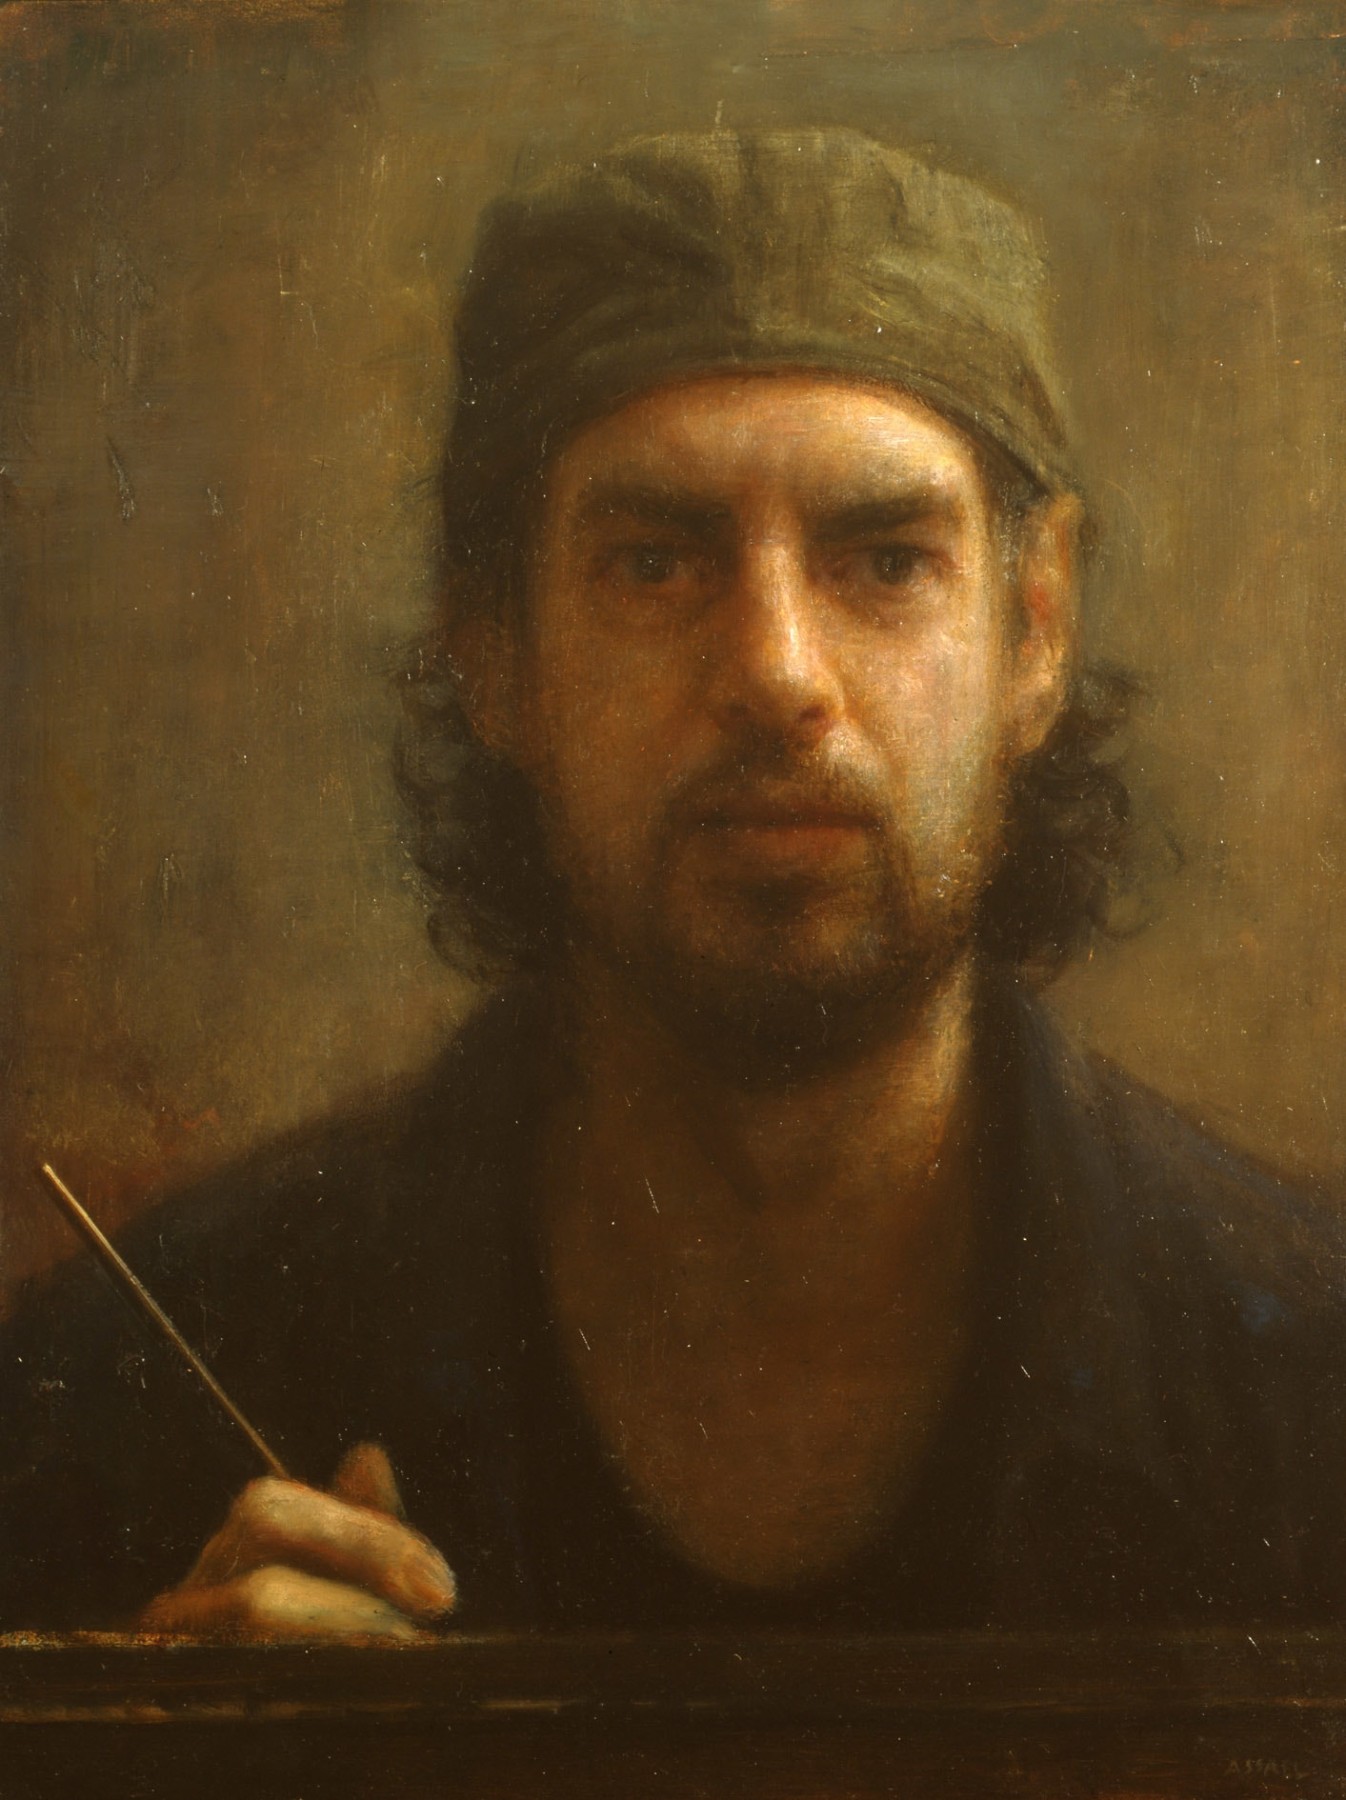 Steven Assael, Self-Portrait, 2007, oil on board, 16 x 12 inches